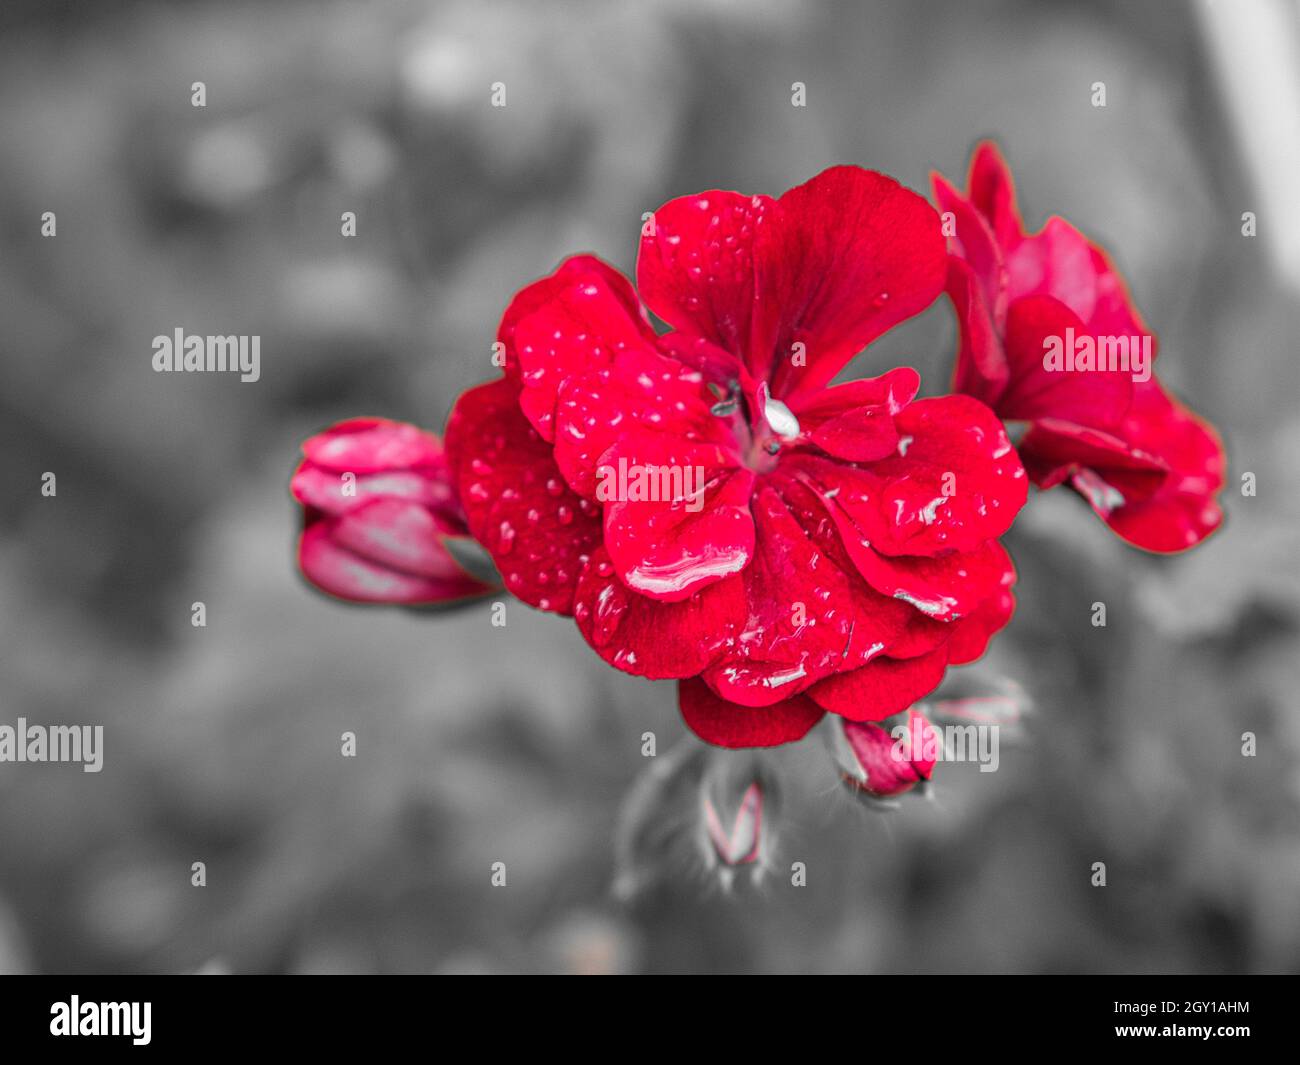 géraniums représentés dans une couleur.Fleurs en rouge, pourpre et rose, le reste était désaturé Banque D'Images